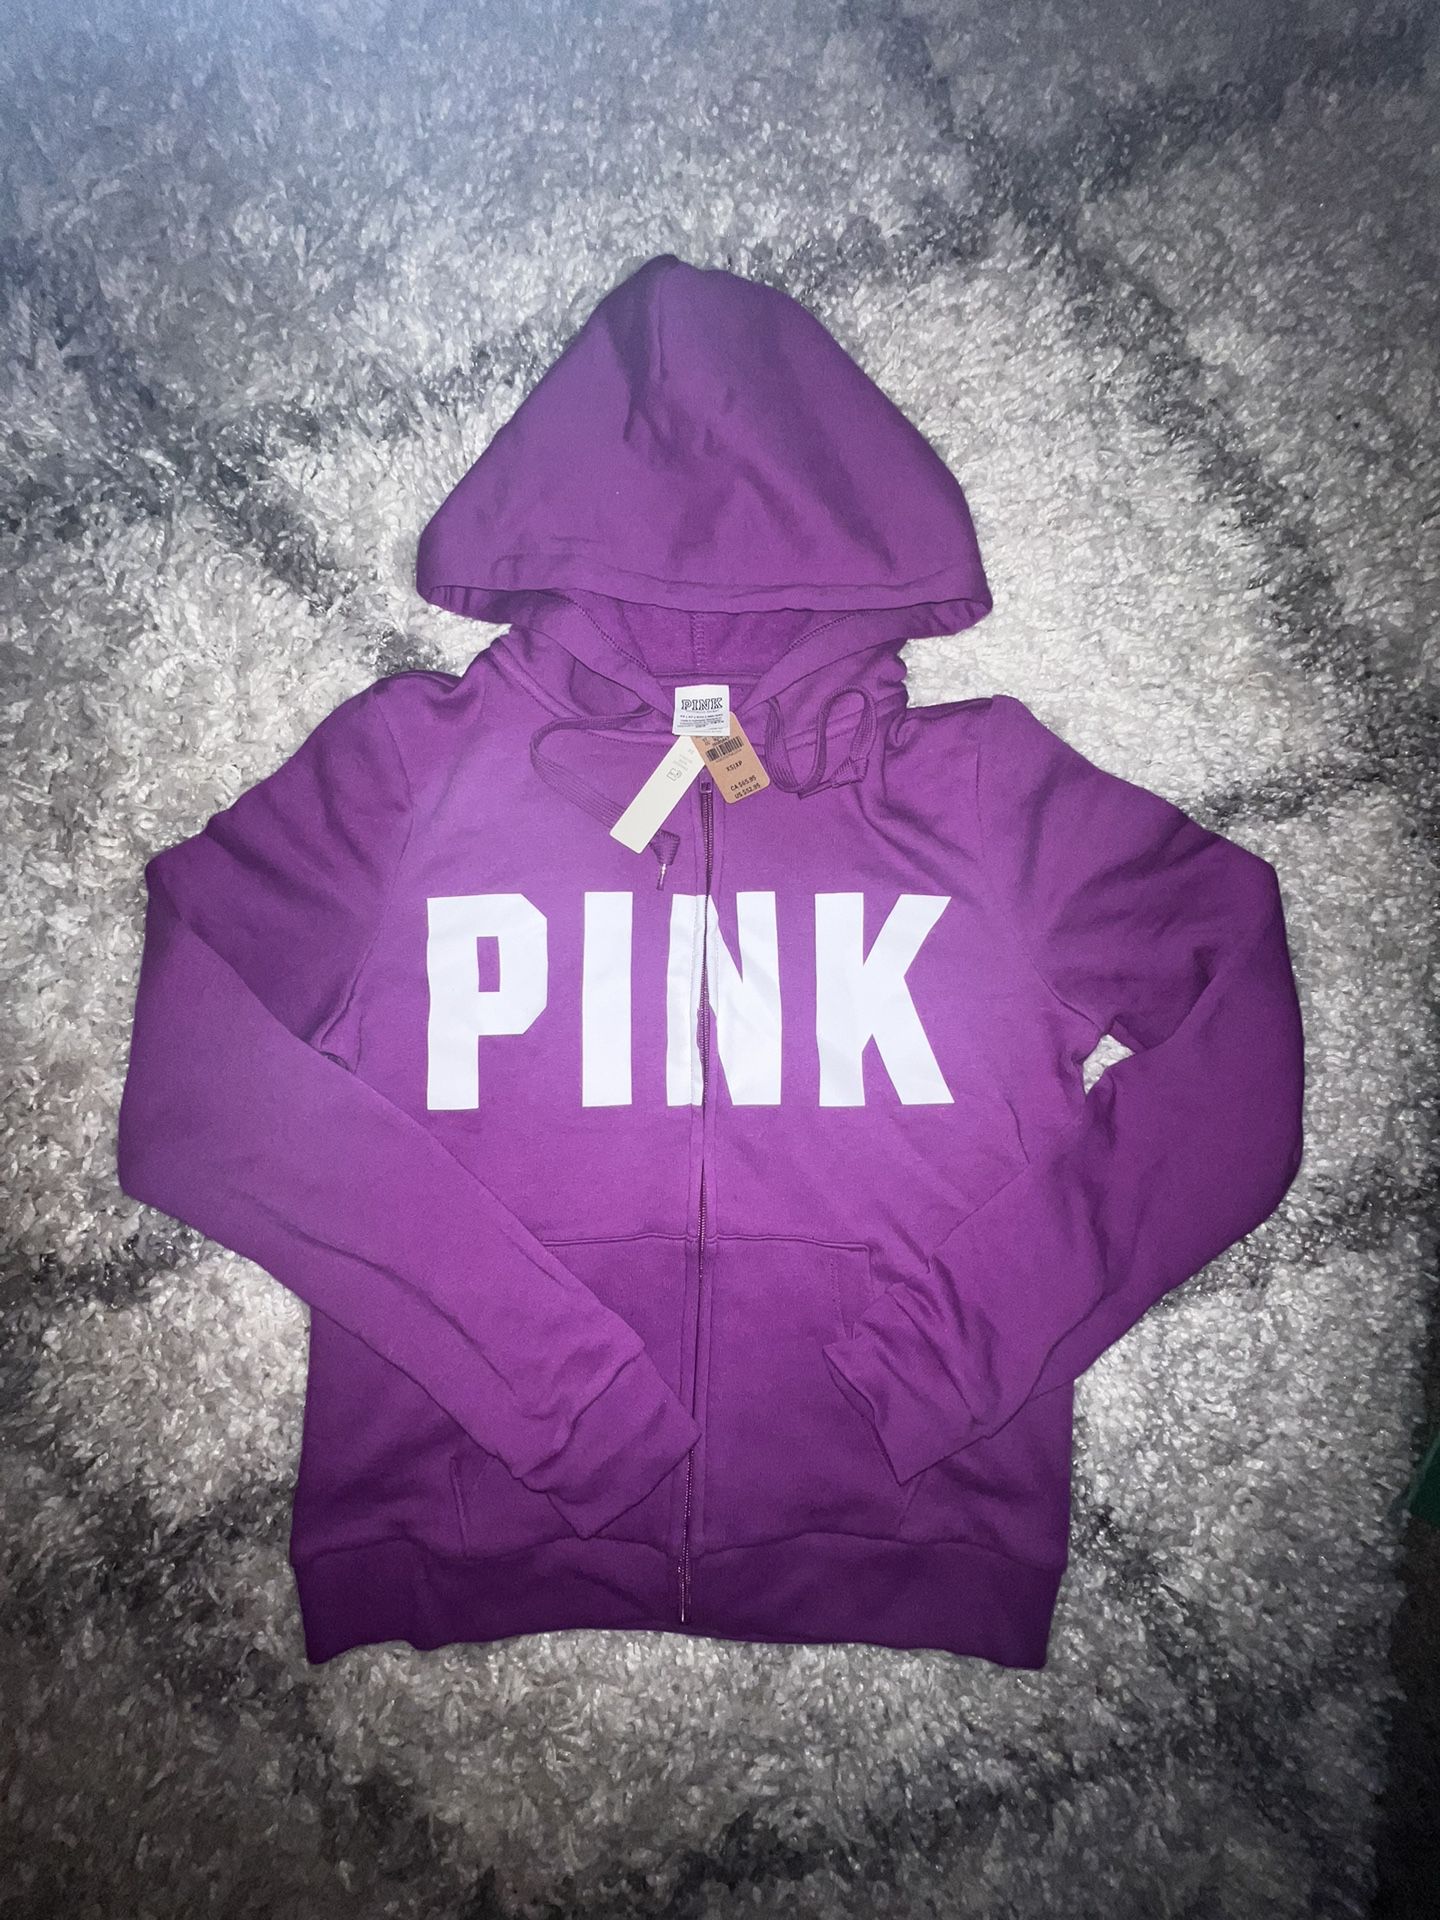 Brand New XS PINK Zip-Up Sweatshirt